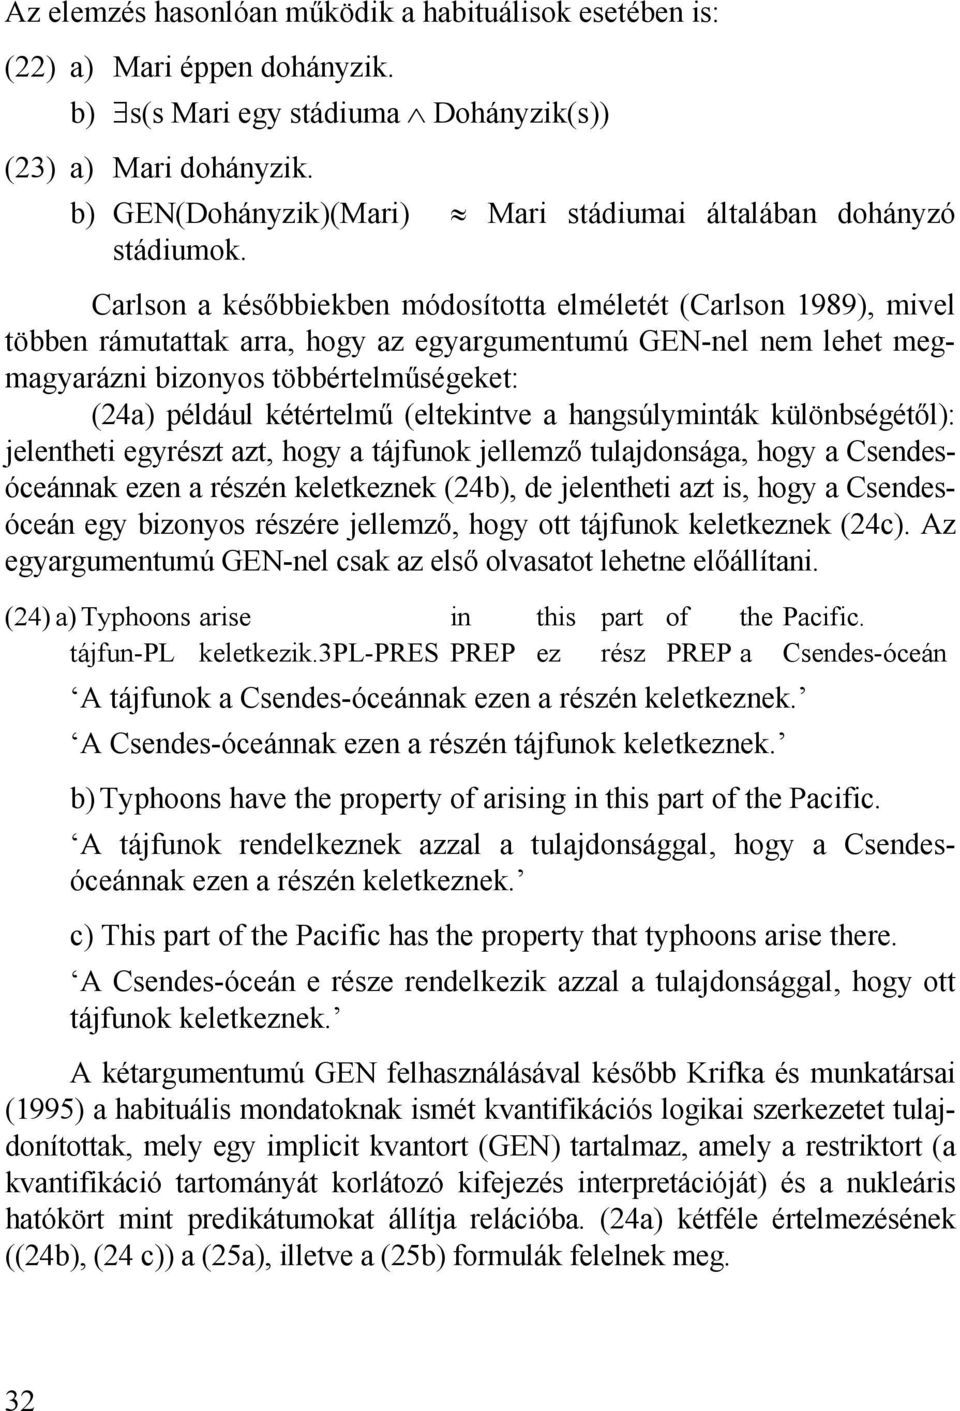 Carlson a későbbiekben módosította elméletét (Carlson 1989), mivel többen rámutattak arra, hogy az egyargumentumú GEN-nel nem lehet megmagyarázni bizonyos többértelműségeket: (24a) például kétértelmű